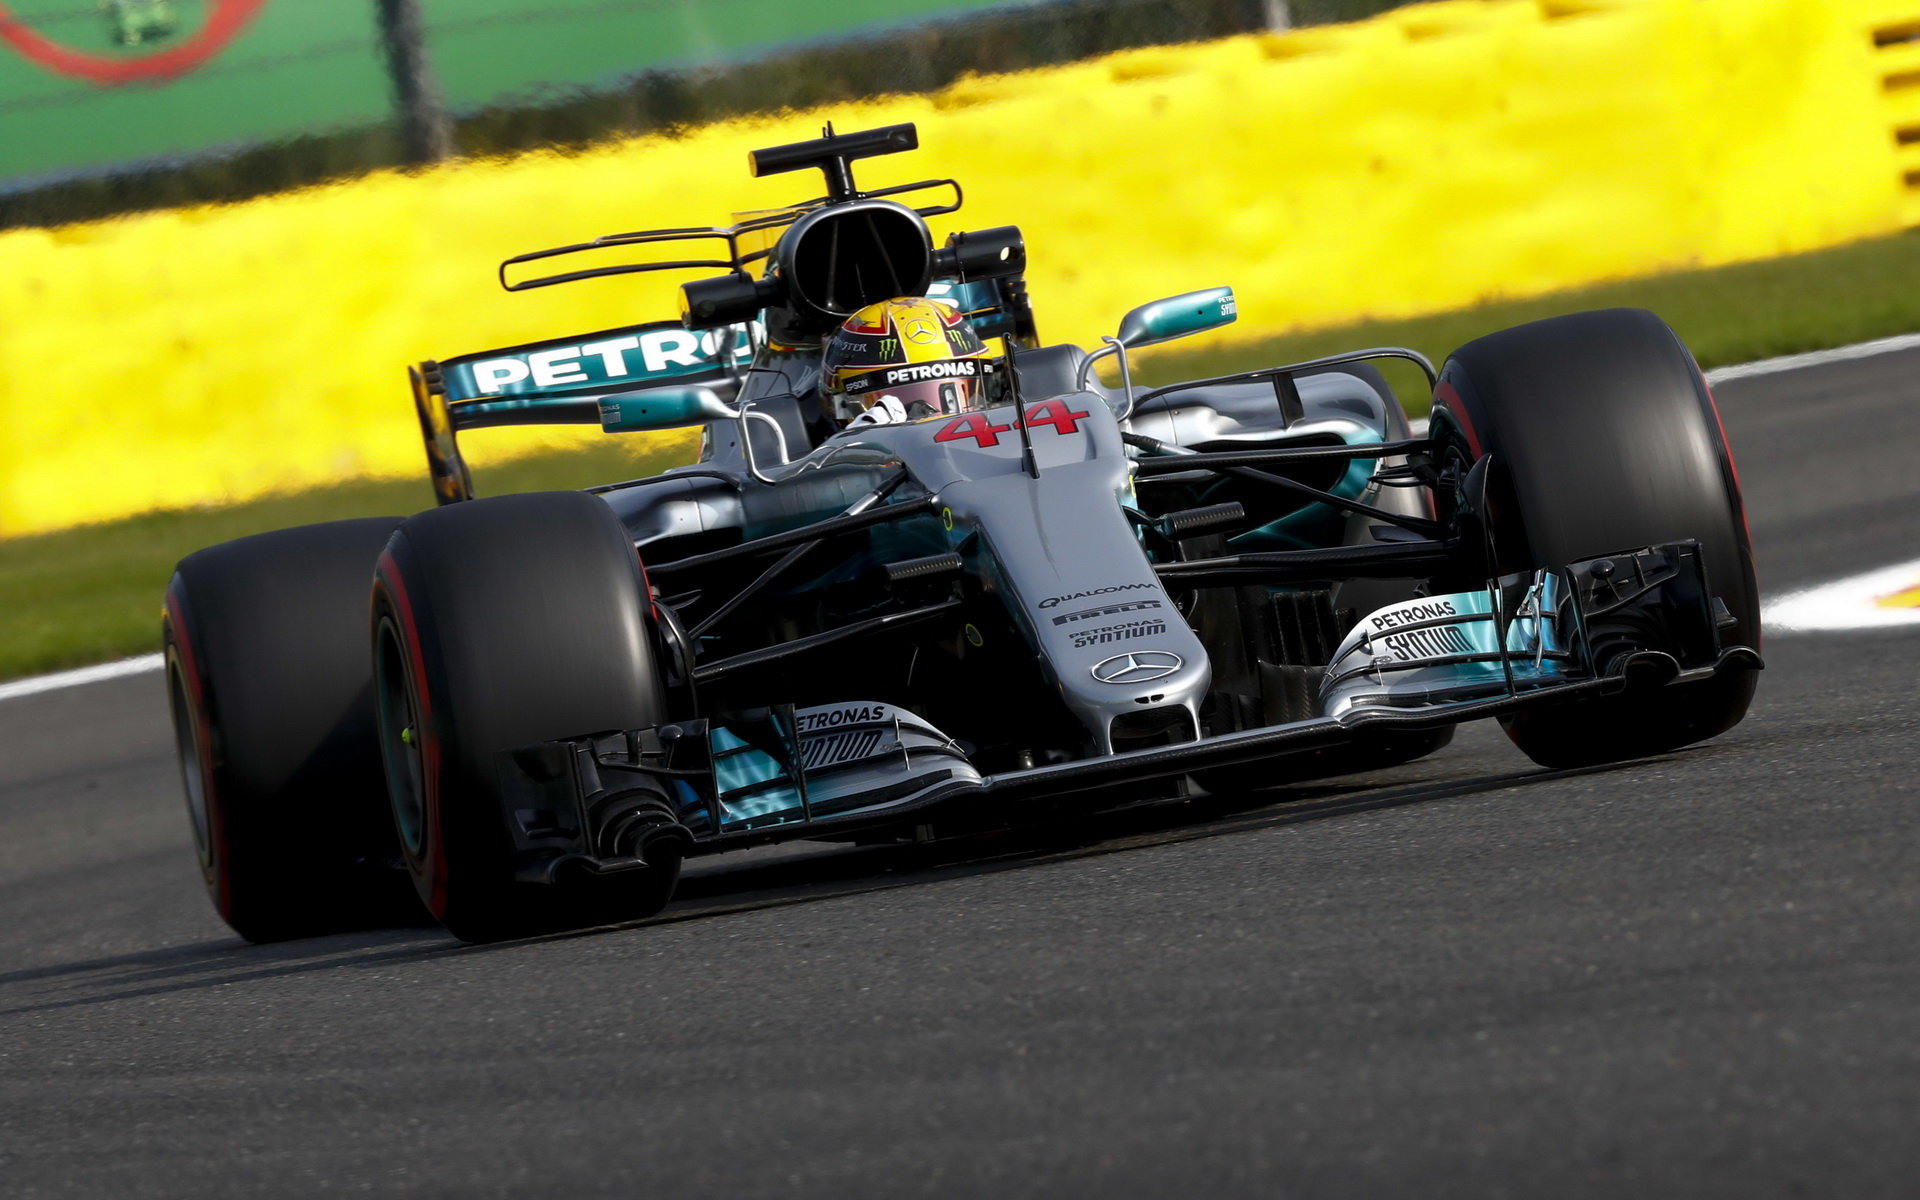 Lewis Hamilton s Mercedesem F1 W08 EQ Power+